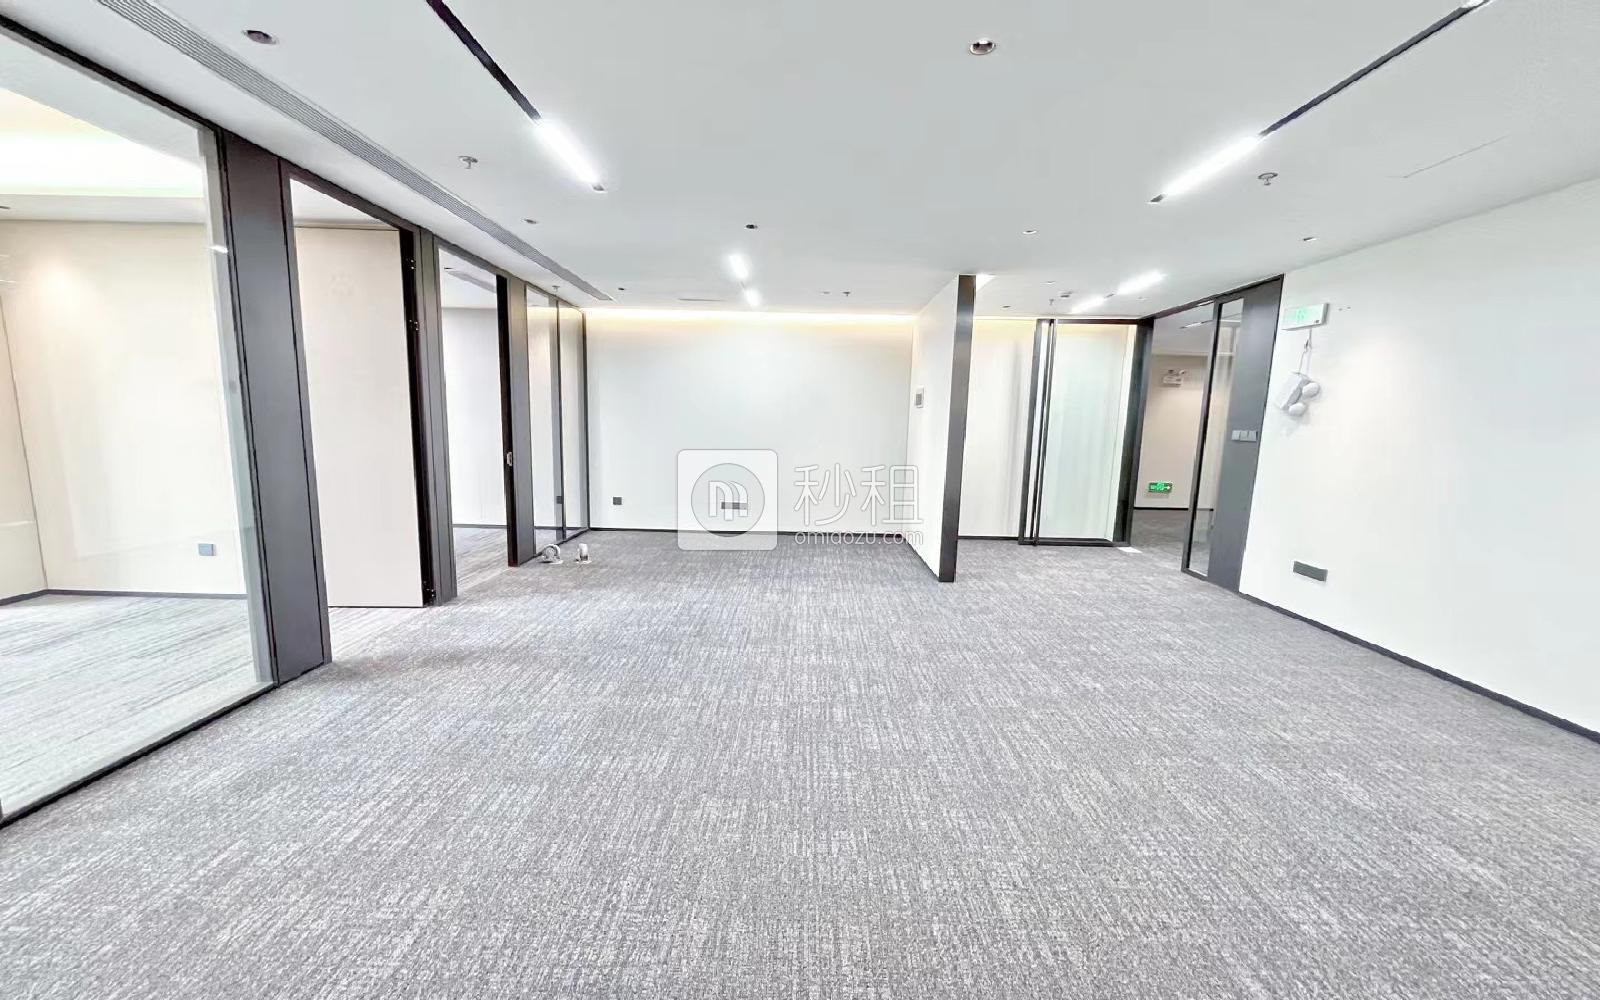 豪威科技大廈寫字樓出租153平米豪裝辦公室115元/m2.月